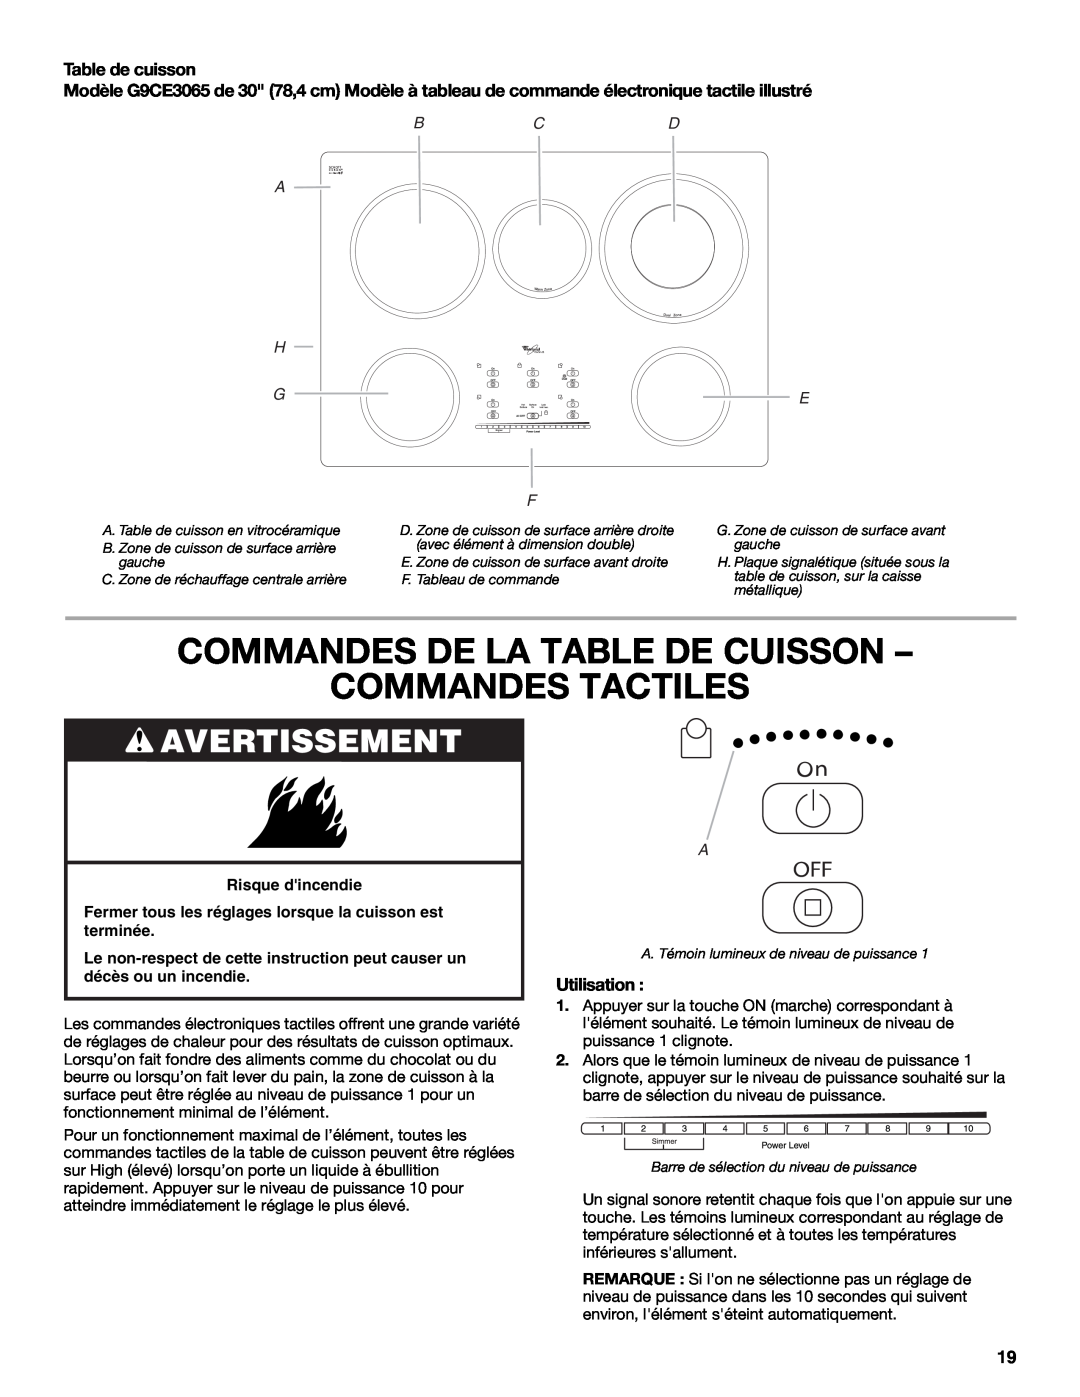 Whirlpool G7CE3034XB Commandes De La Table De Cuisson Commandes Tactiles, Avertissement, Table de cuisson, Utilisation 